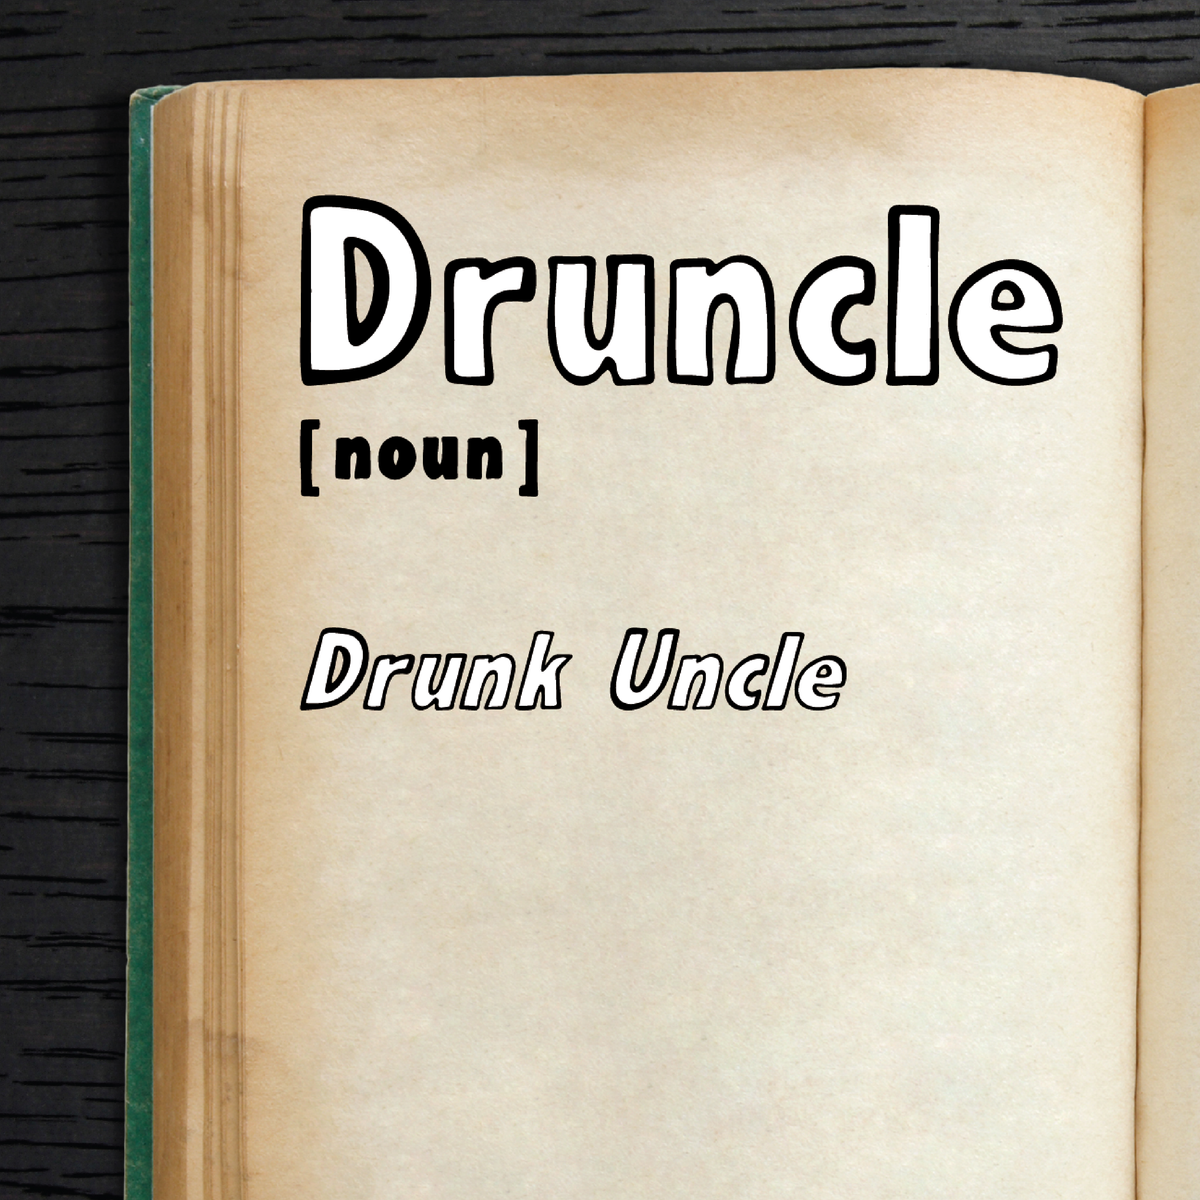 Druncle 🍺👨 – Stubby Holder